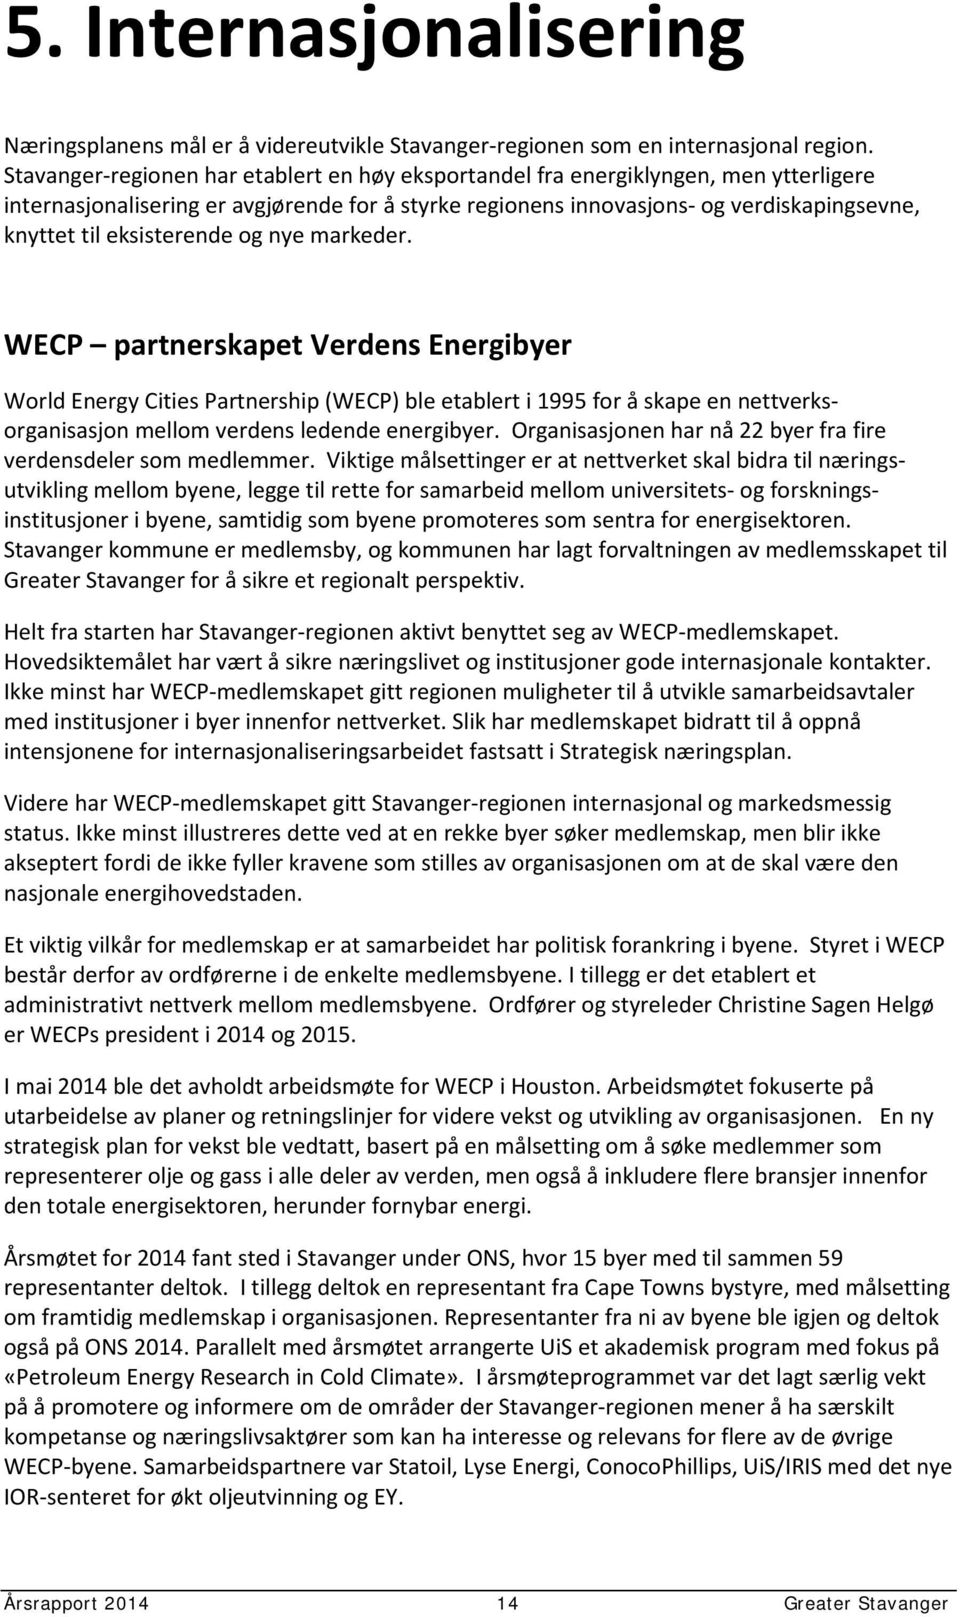 eksisterende og nye markeder. WECP partnerskapet Verdens Energibyer World Energy Cities Partnership (WECP) ble etablert i 1995 for å skape en nettverksorganisasjon mellom verdens ledende energibyer.